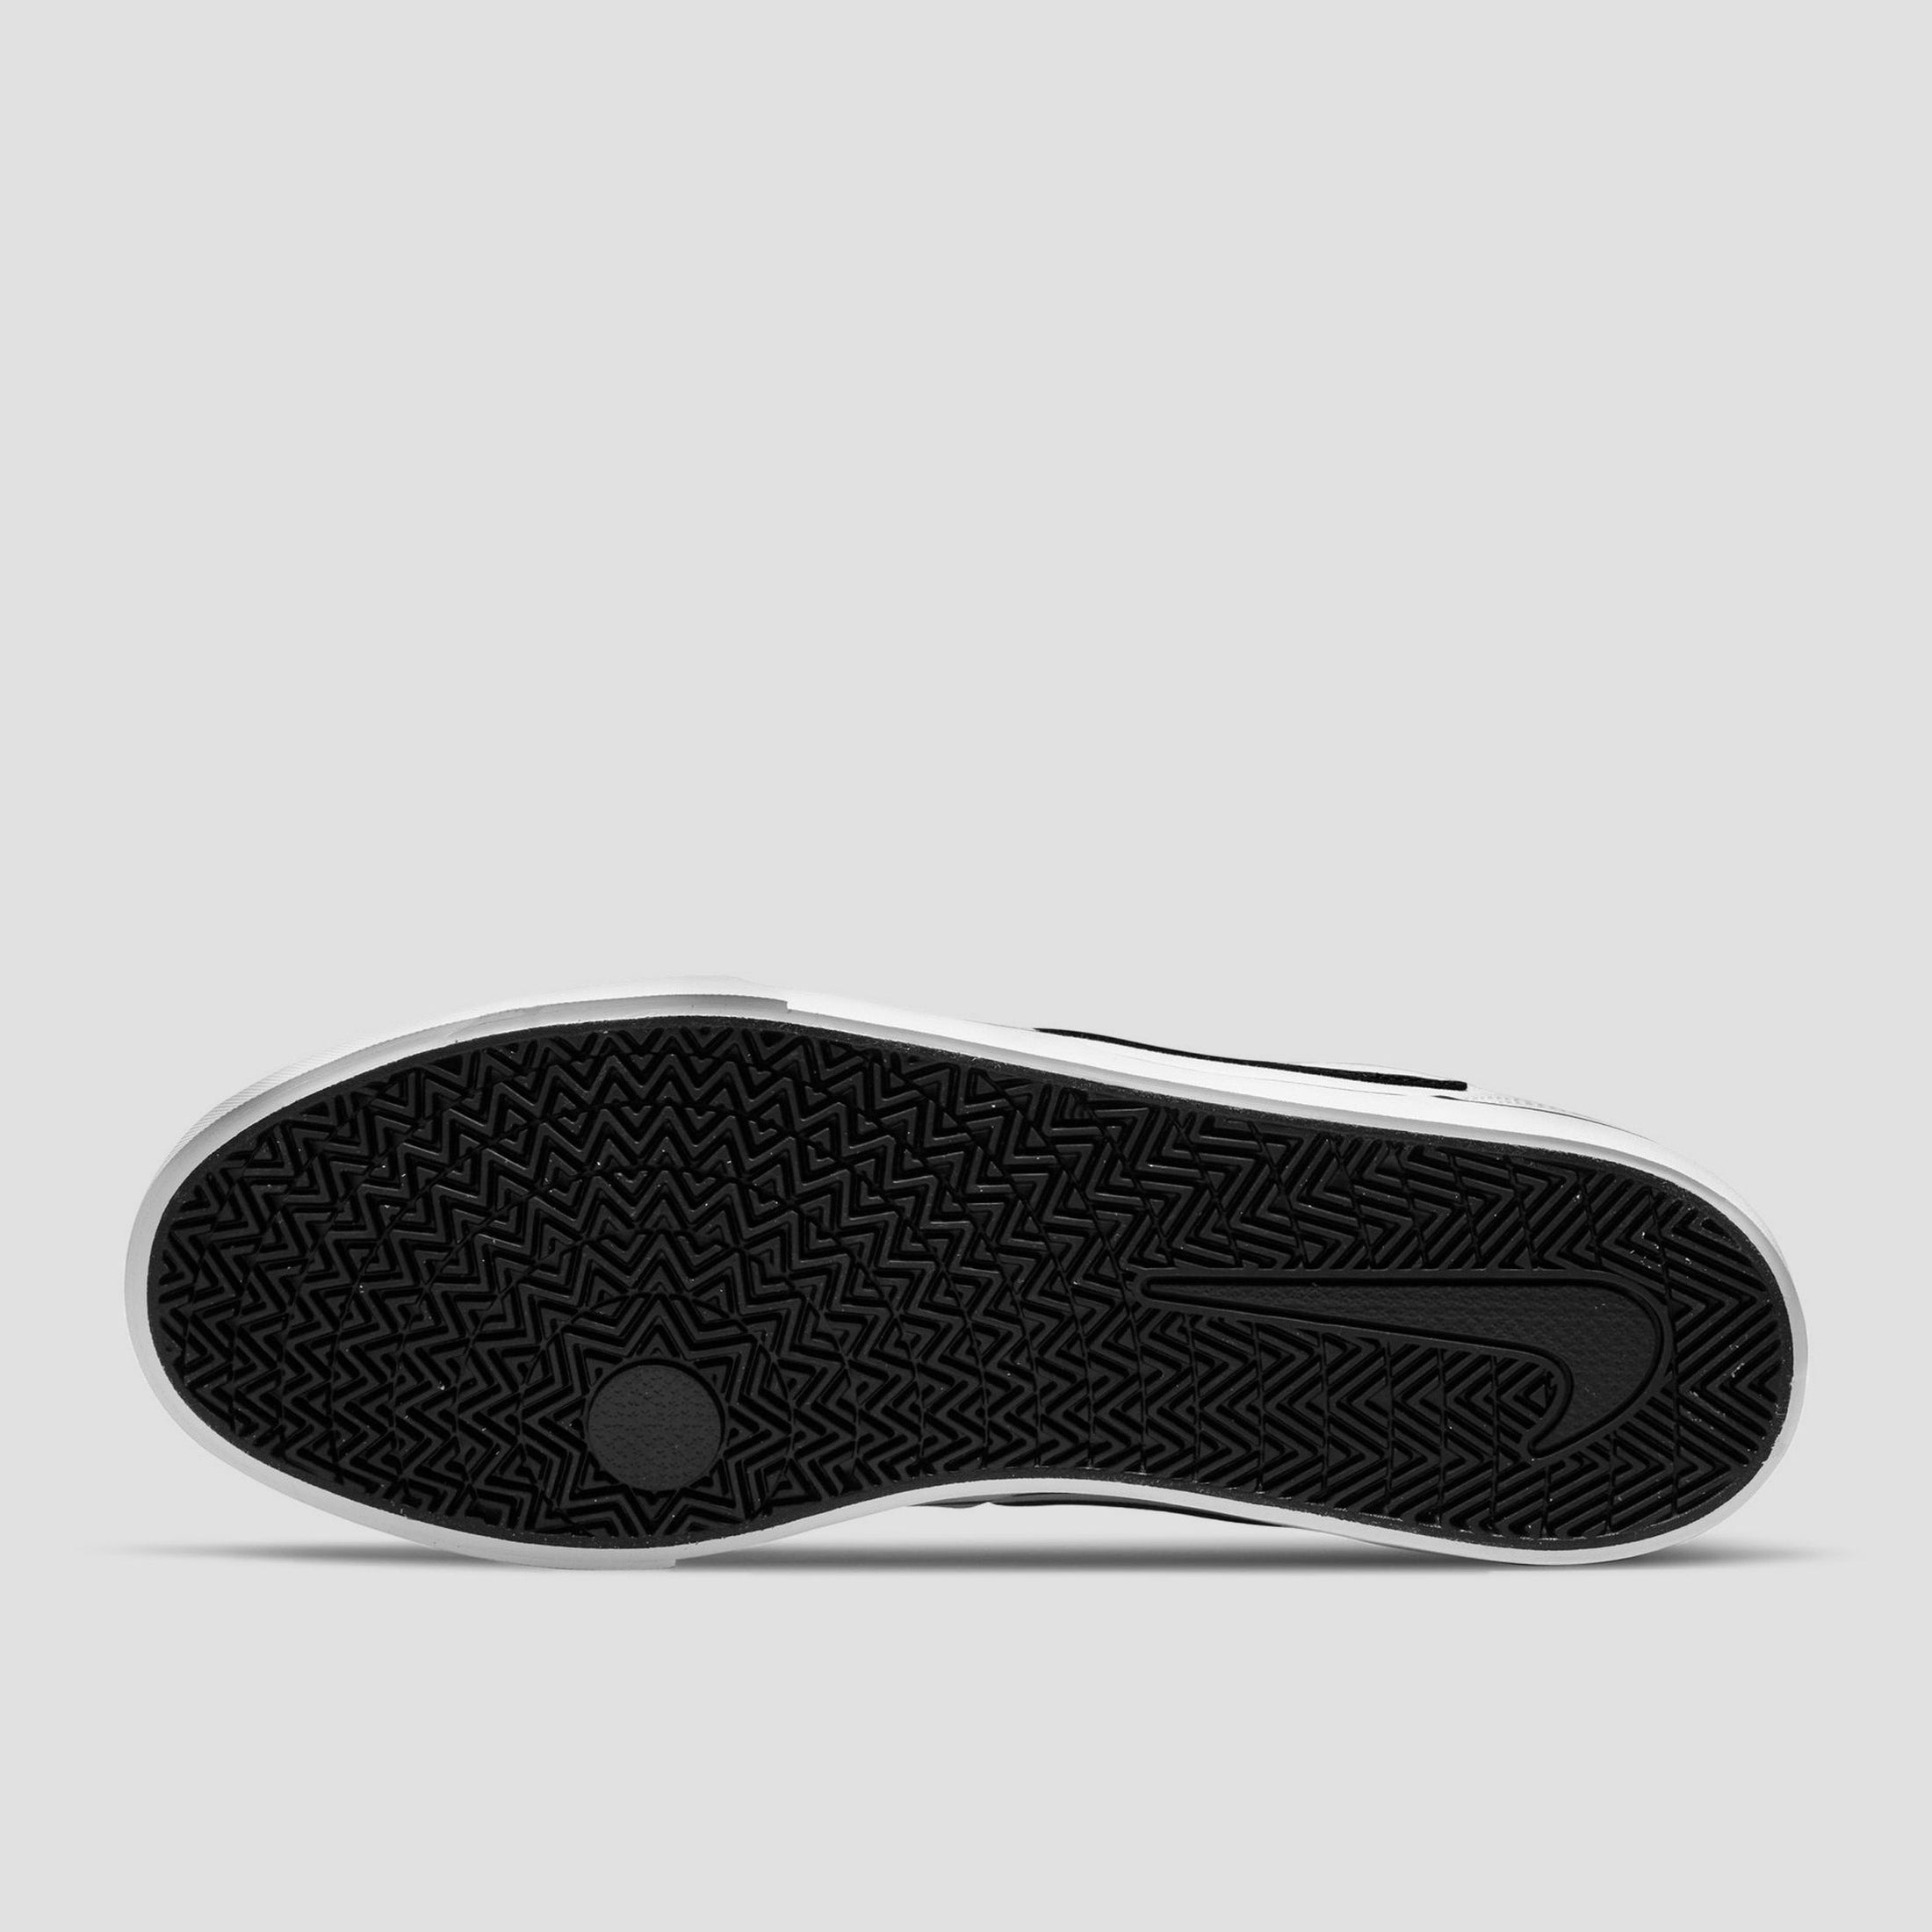 Nike SB Chron 2 Canvas Shoes White / Black / White